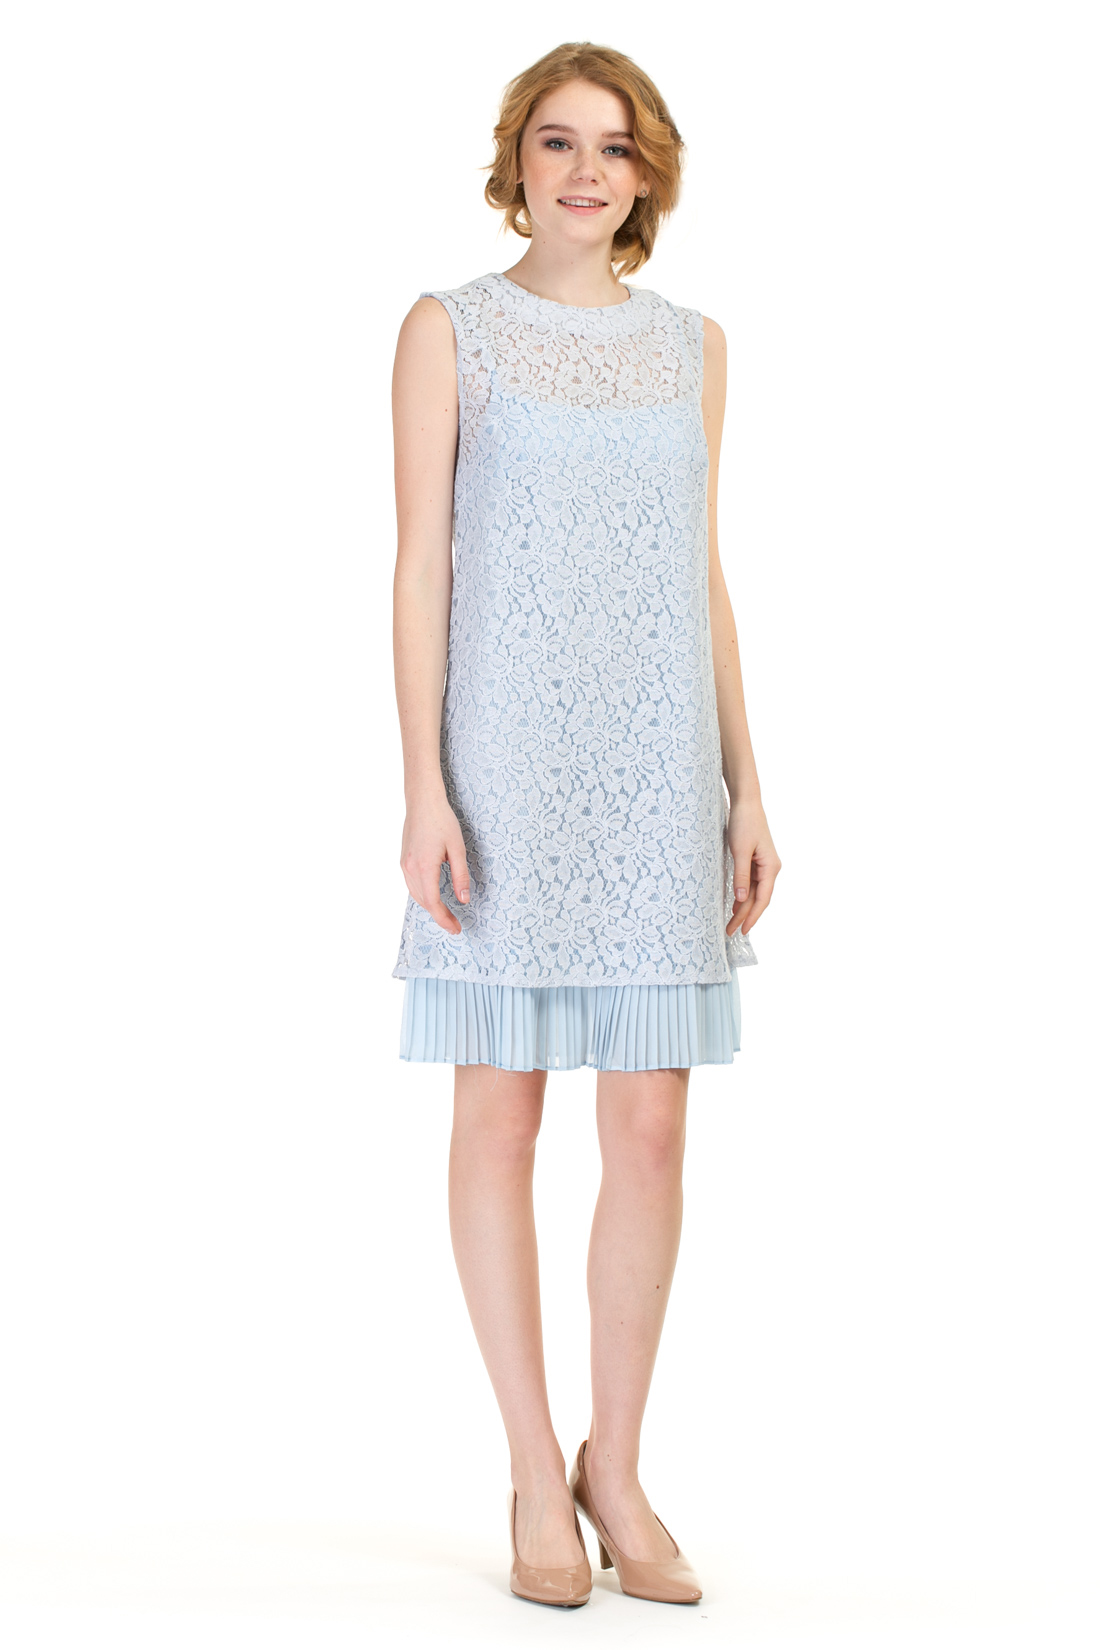 Платье из гипюра (арт. baon B457075), размер M, цвет голубой Платье из гипюра (арт. baon B457075) - фото 1